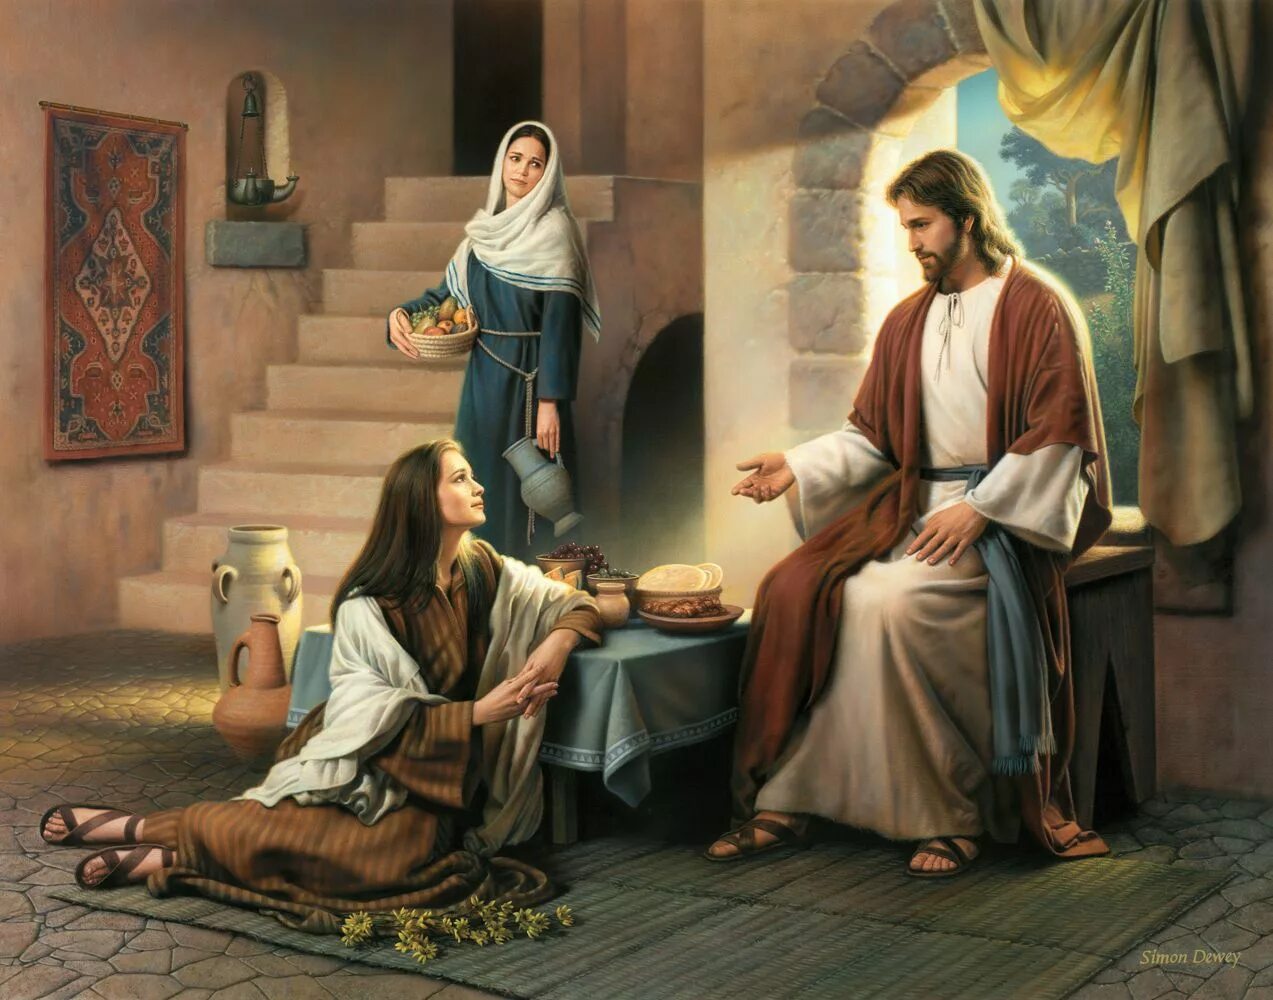 Христос у Марфы и Марии. Иисус в доме Лазаря Марфы и Марии. Mary is a student